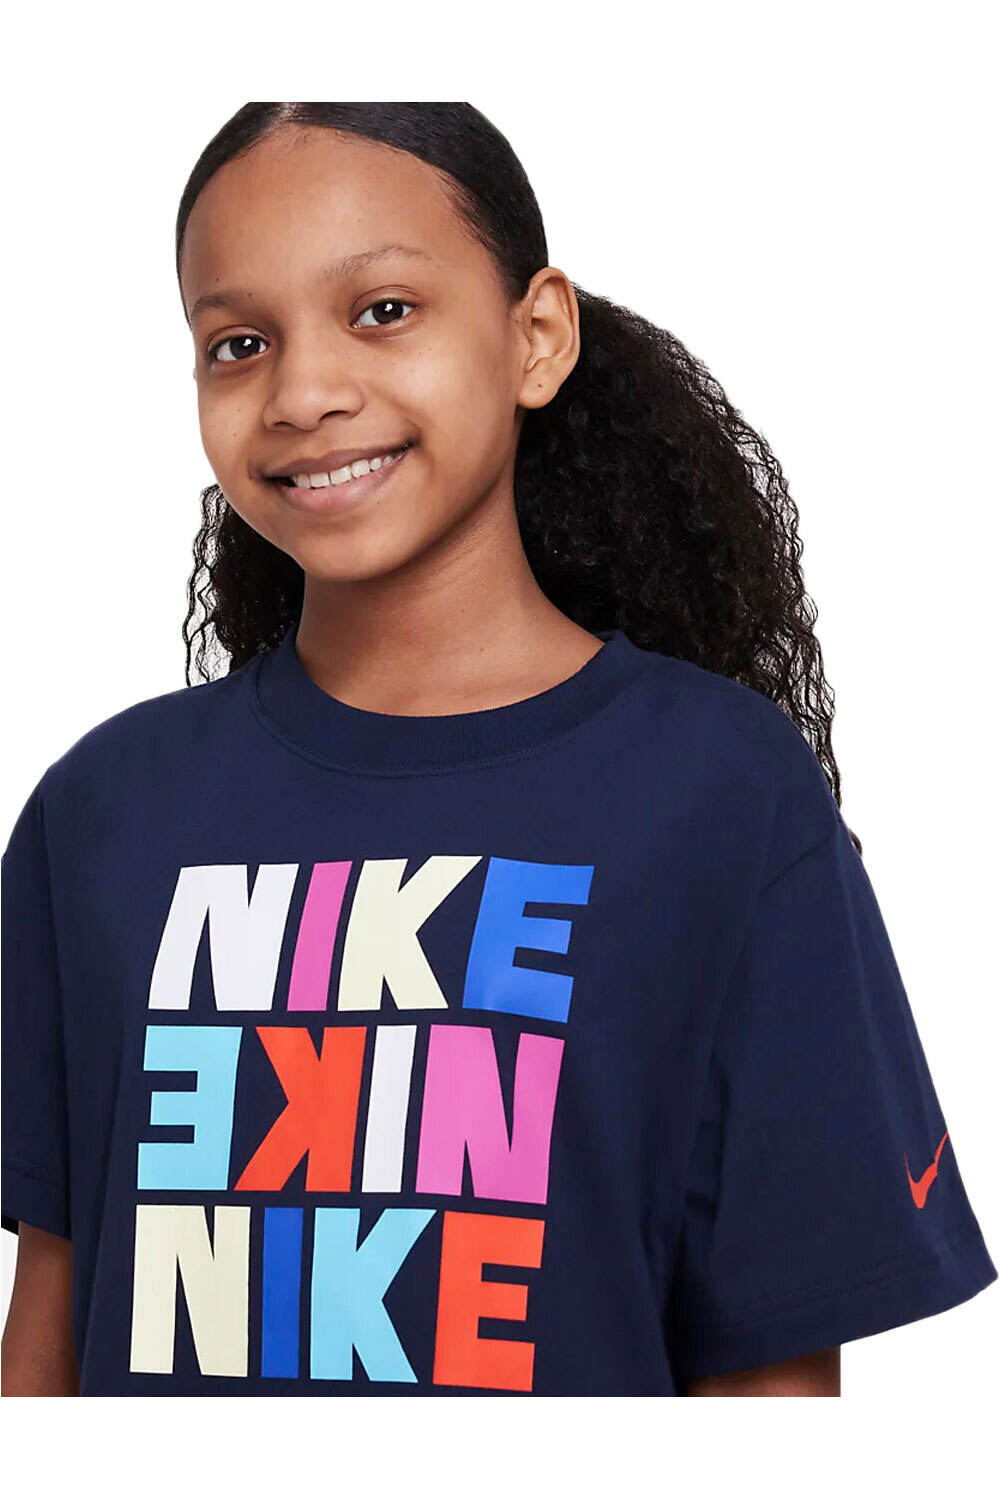 Nike camiseta manga corta niña G NSW TEE BOXY PRINT vista detalle